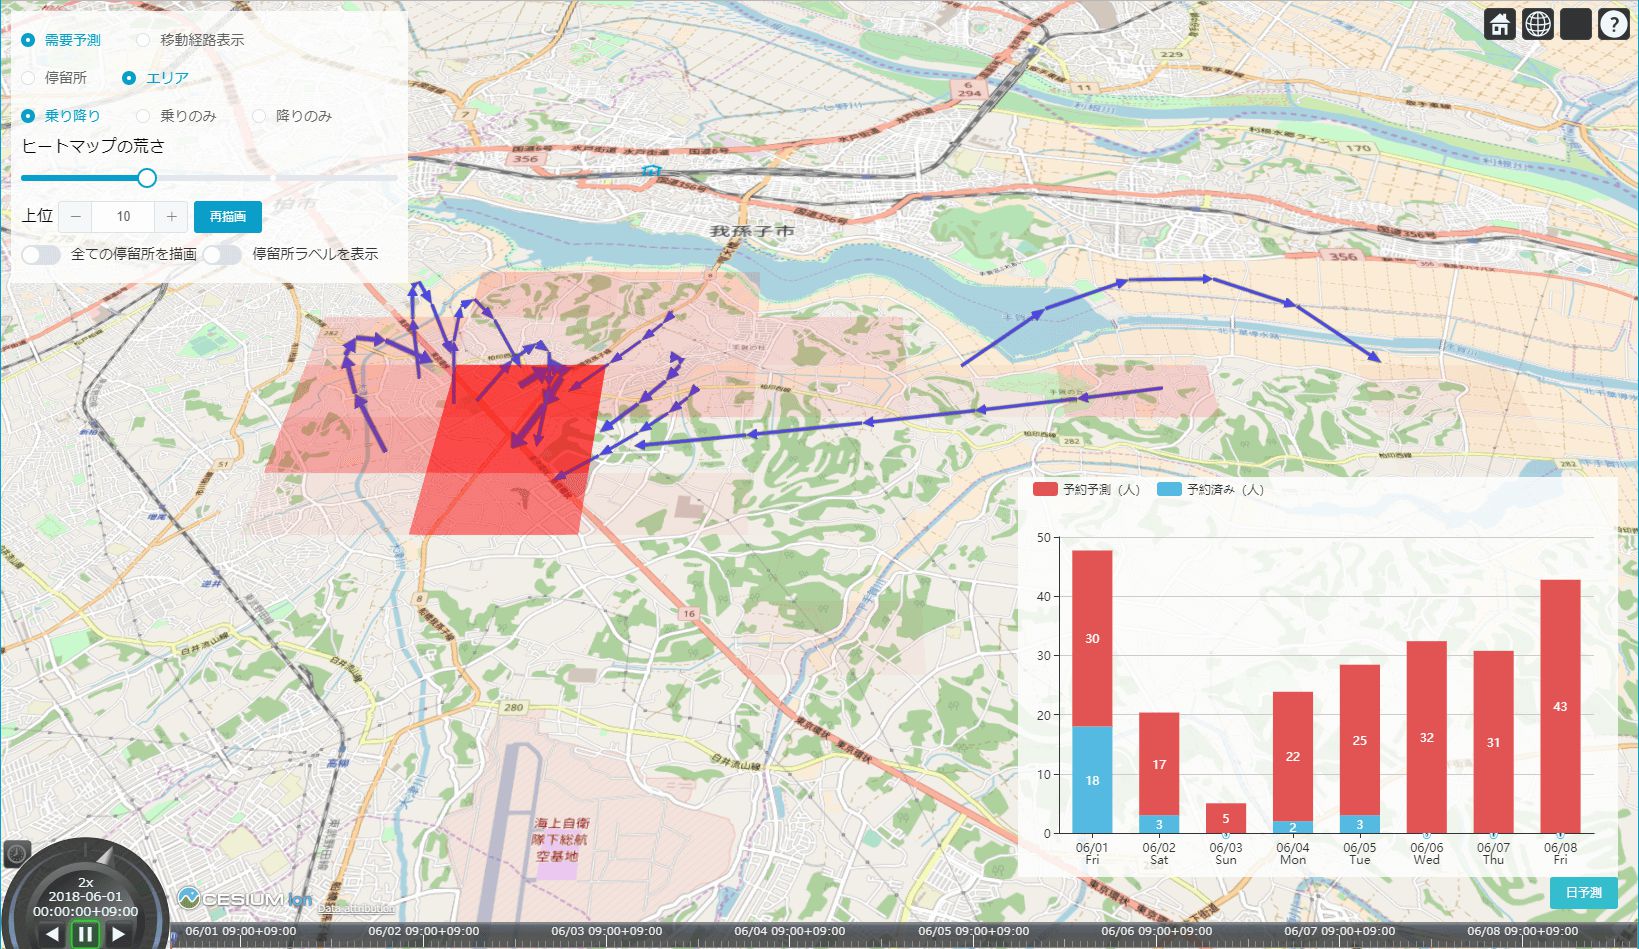 用来显示运行区域的需求度高低的地图 © OpenStreetMap contributors